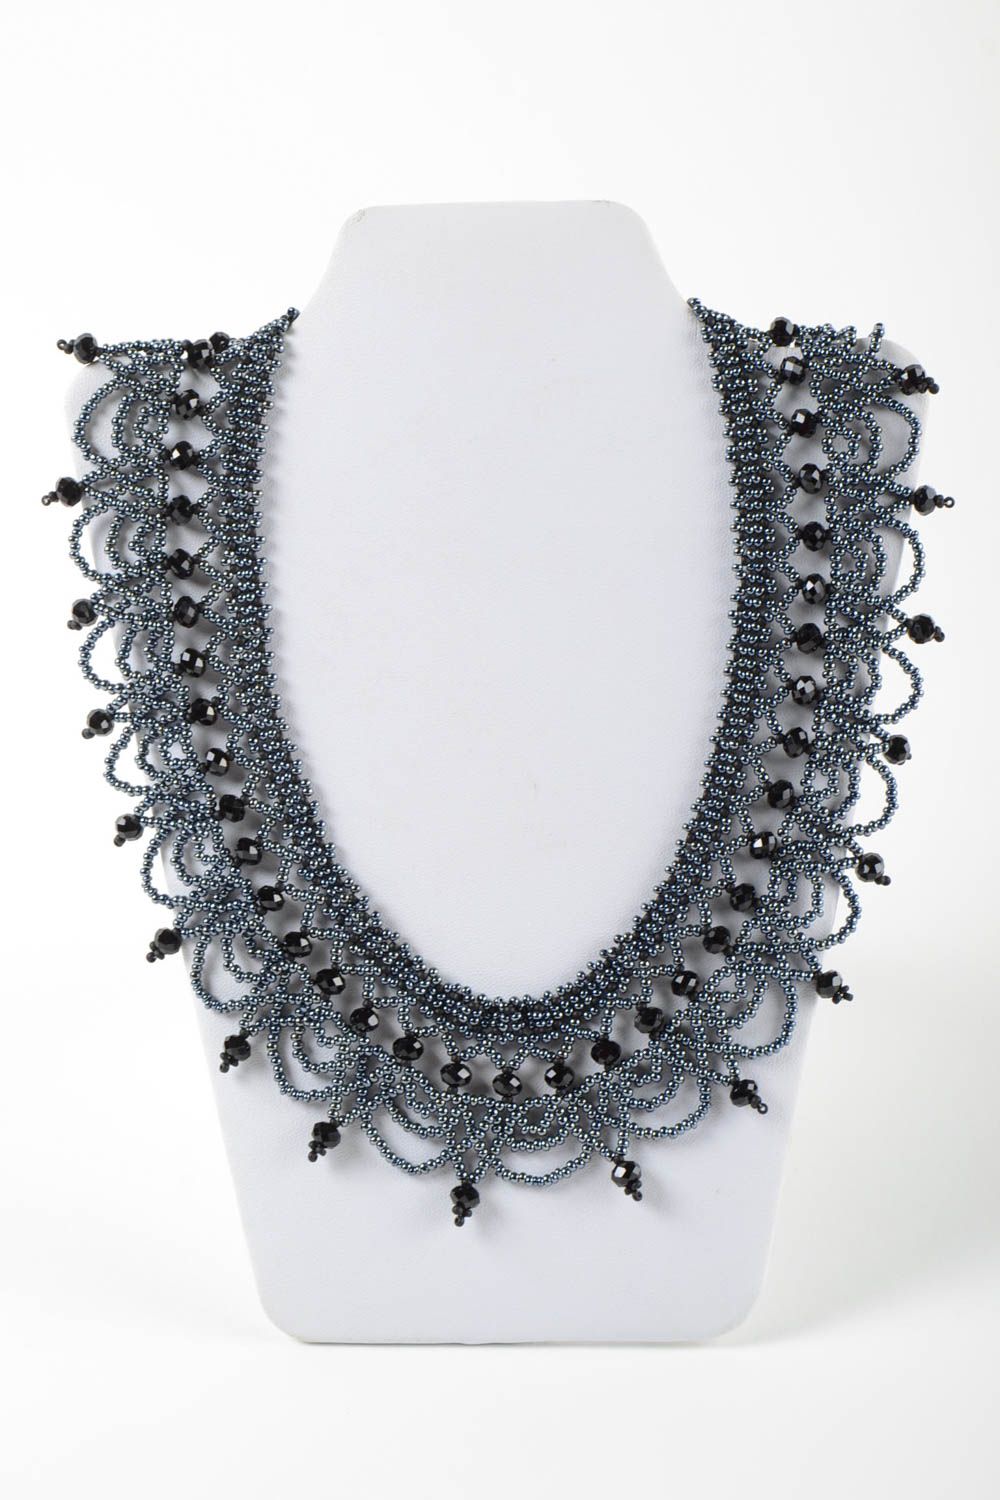 Ожерелье из чешского бисера широкое серо-черное авторское ручной работы фото 2